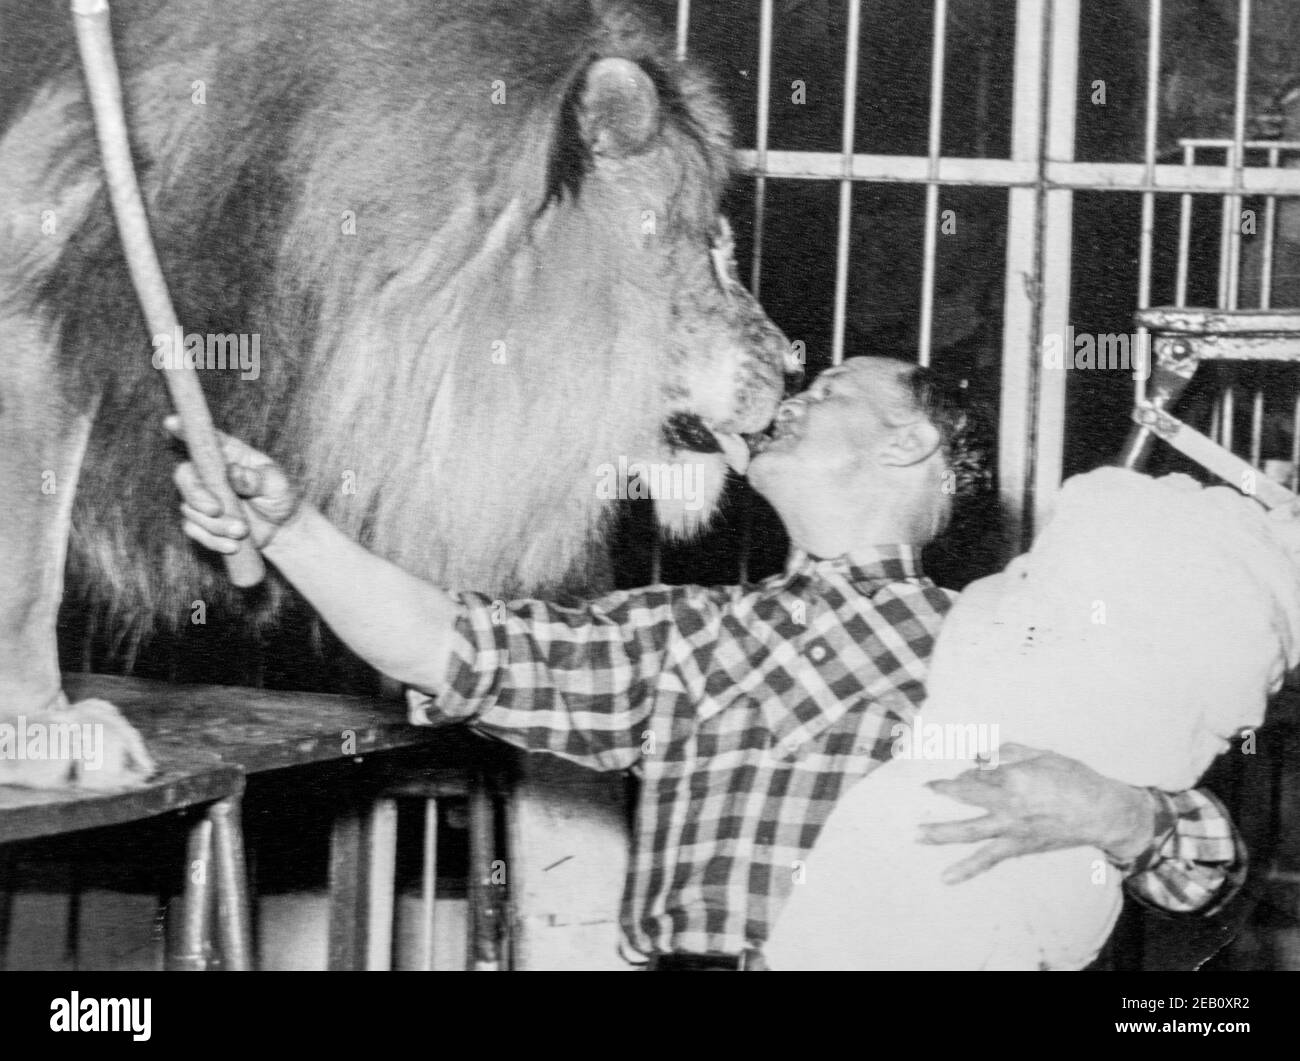 Schwarz-Weiß-Fotografie aus dem Jahr 1950s zeigt Löwenbändiger, der männlichen Löwen einen Todeskuss mit Baby auf dem Arm gab, Tradition unter Zirkusdarstellern Stockfoto